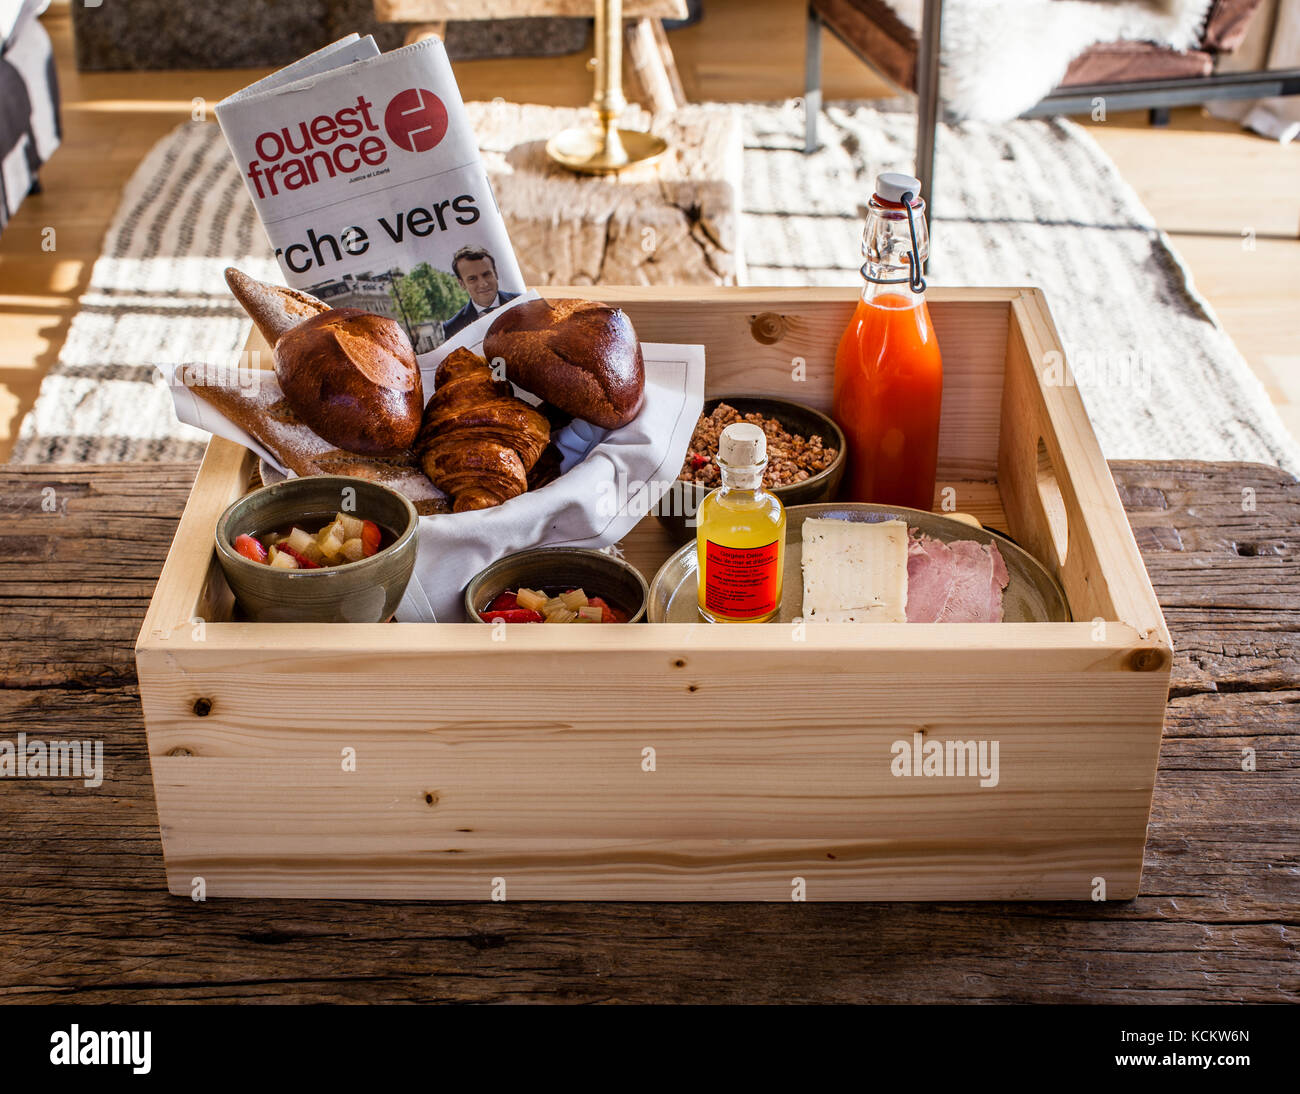 Petit-déjeuner français dans une boîte en bois. La boîte du petit déjeuner est portée à la porte. Bien sûr, un journal quotidien est également inclus Banque D'Images